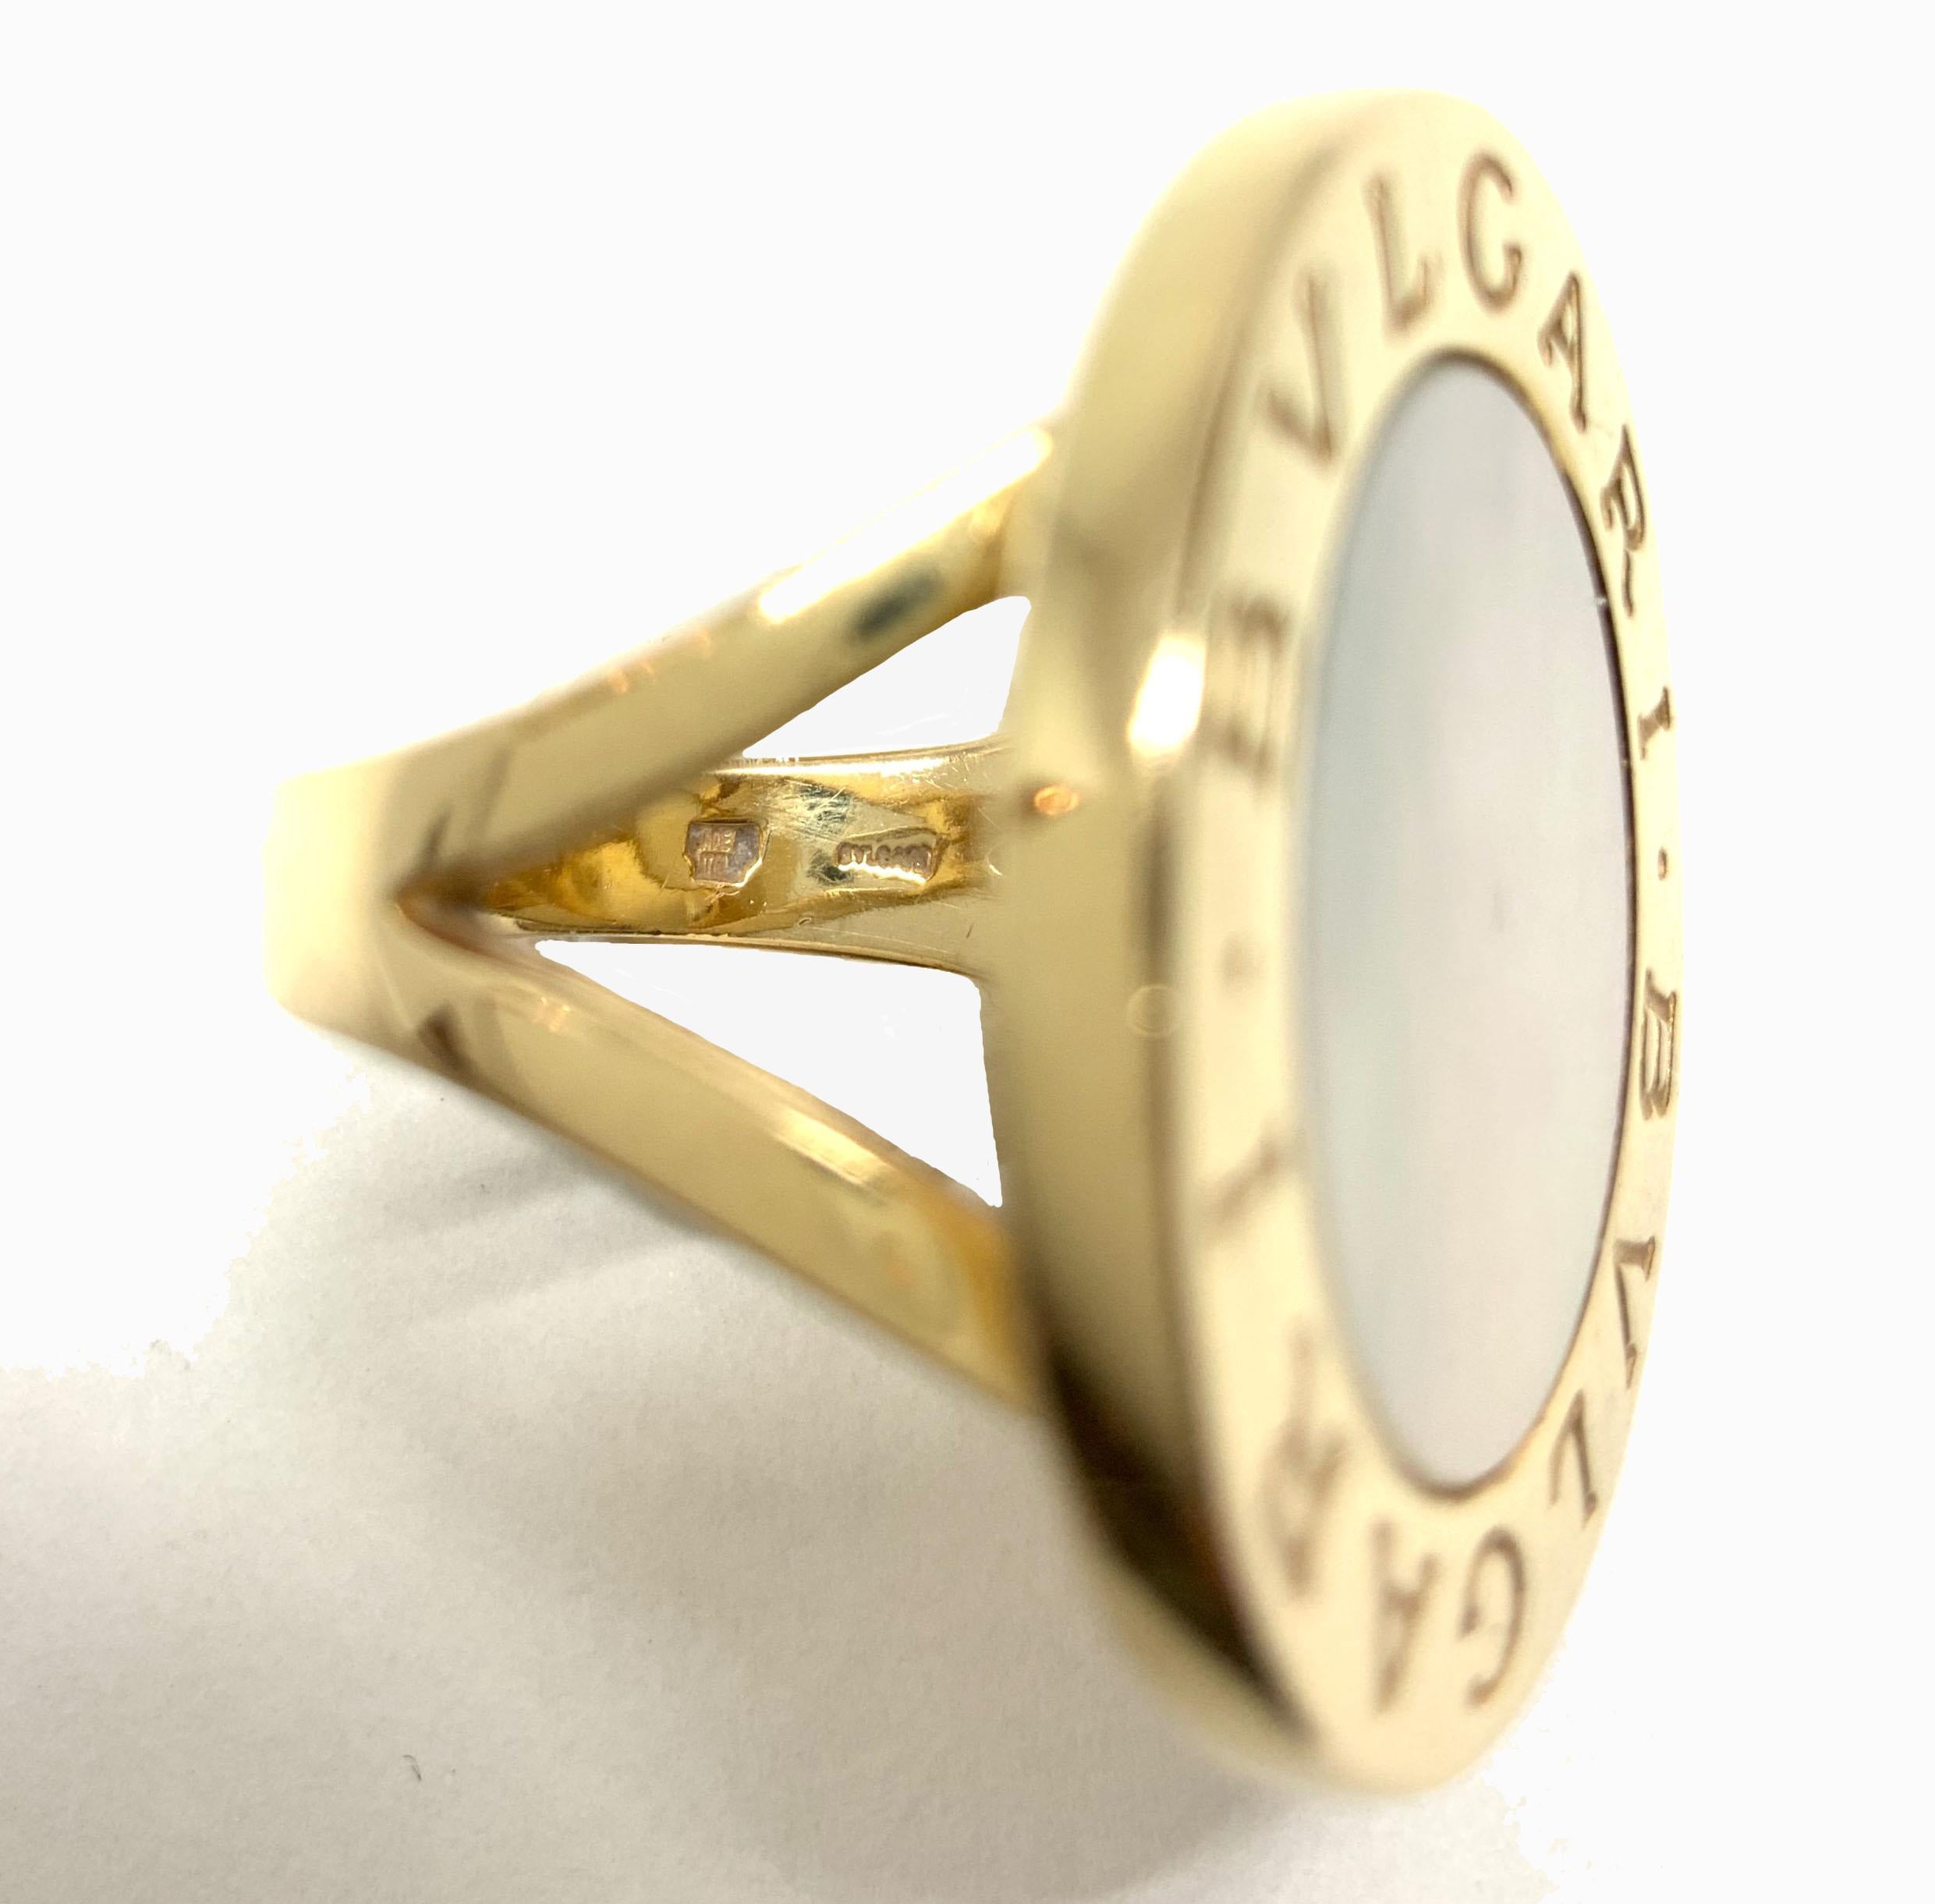 Uncut Bulgari Bvlgari 18 Kt Gold Mother-of-Pearl Split Shank Ring